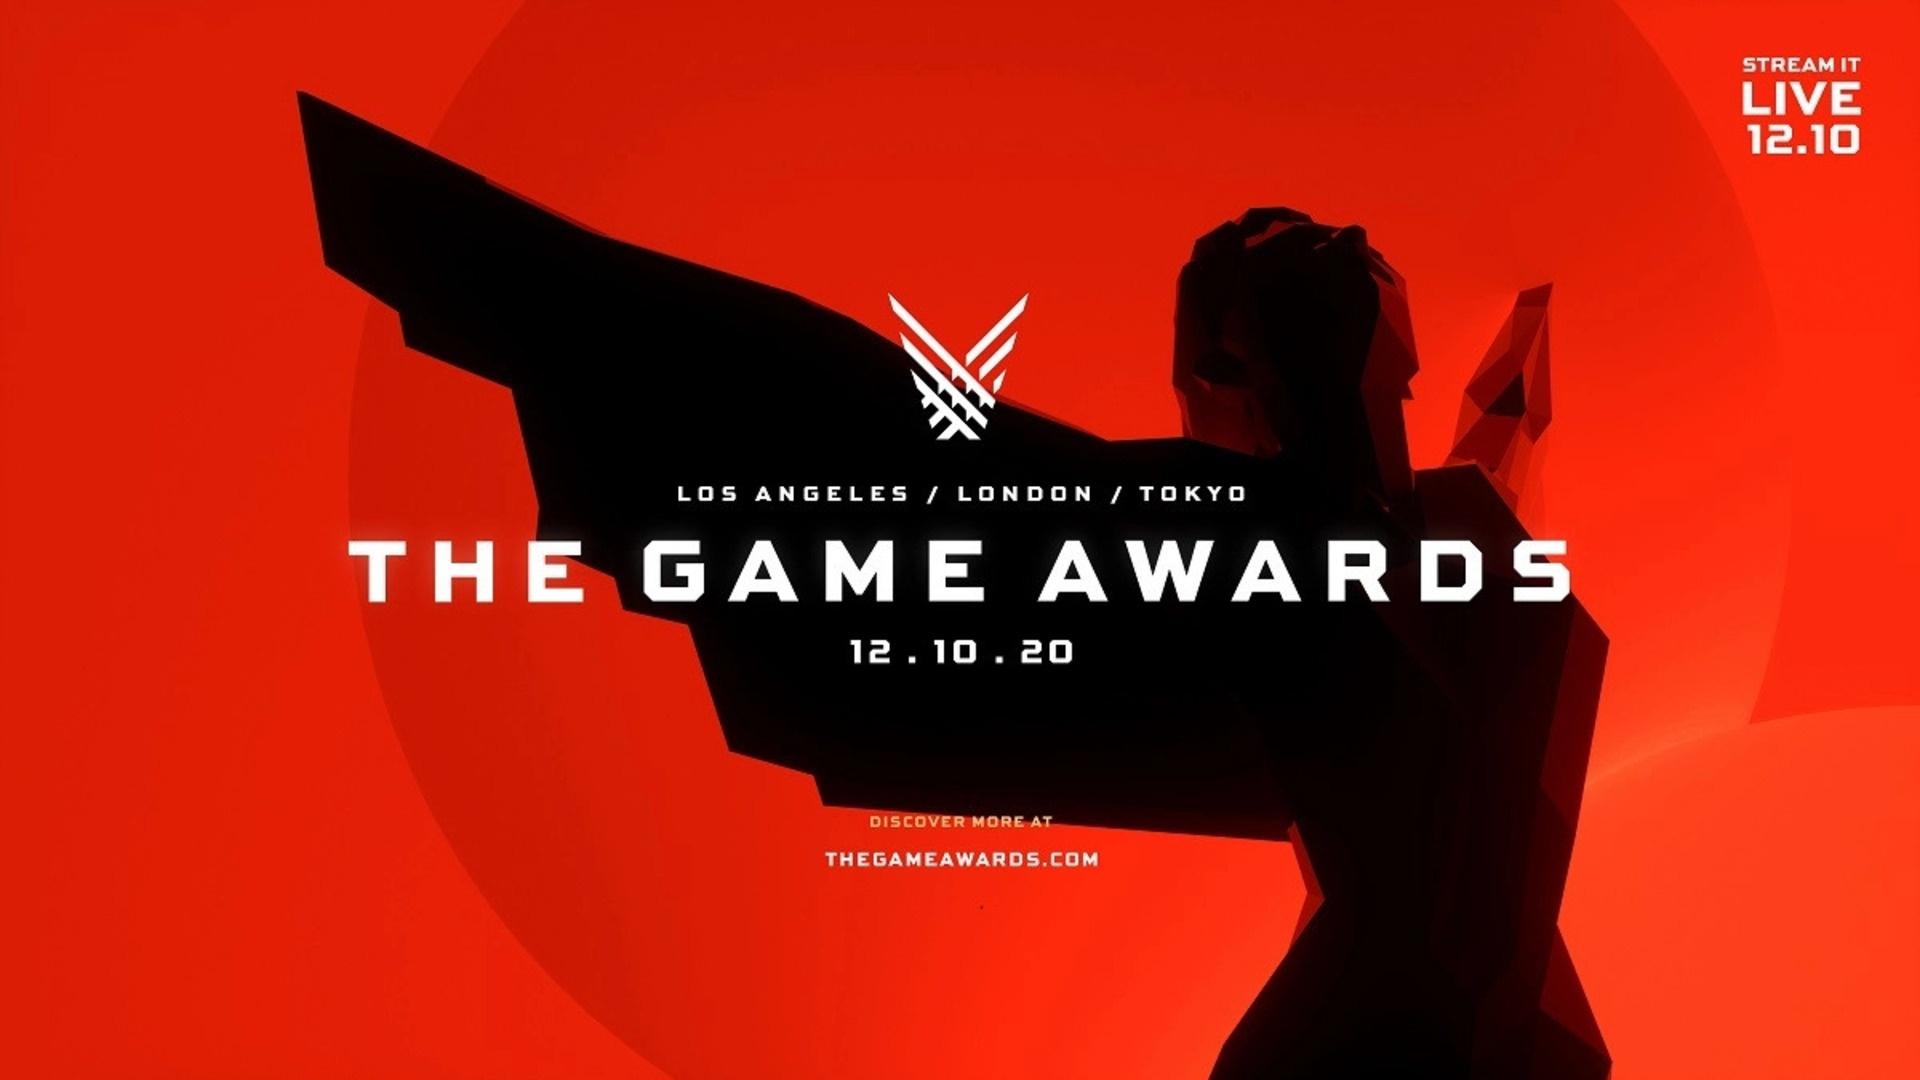 Sekiro é o jogo do ano no The Game Awards 2019. RPG independente se destaca  - Outer Space